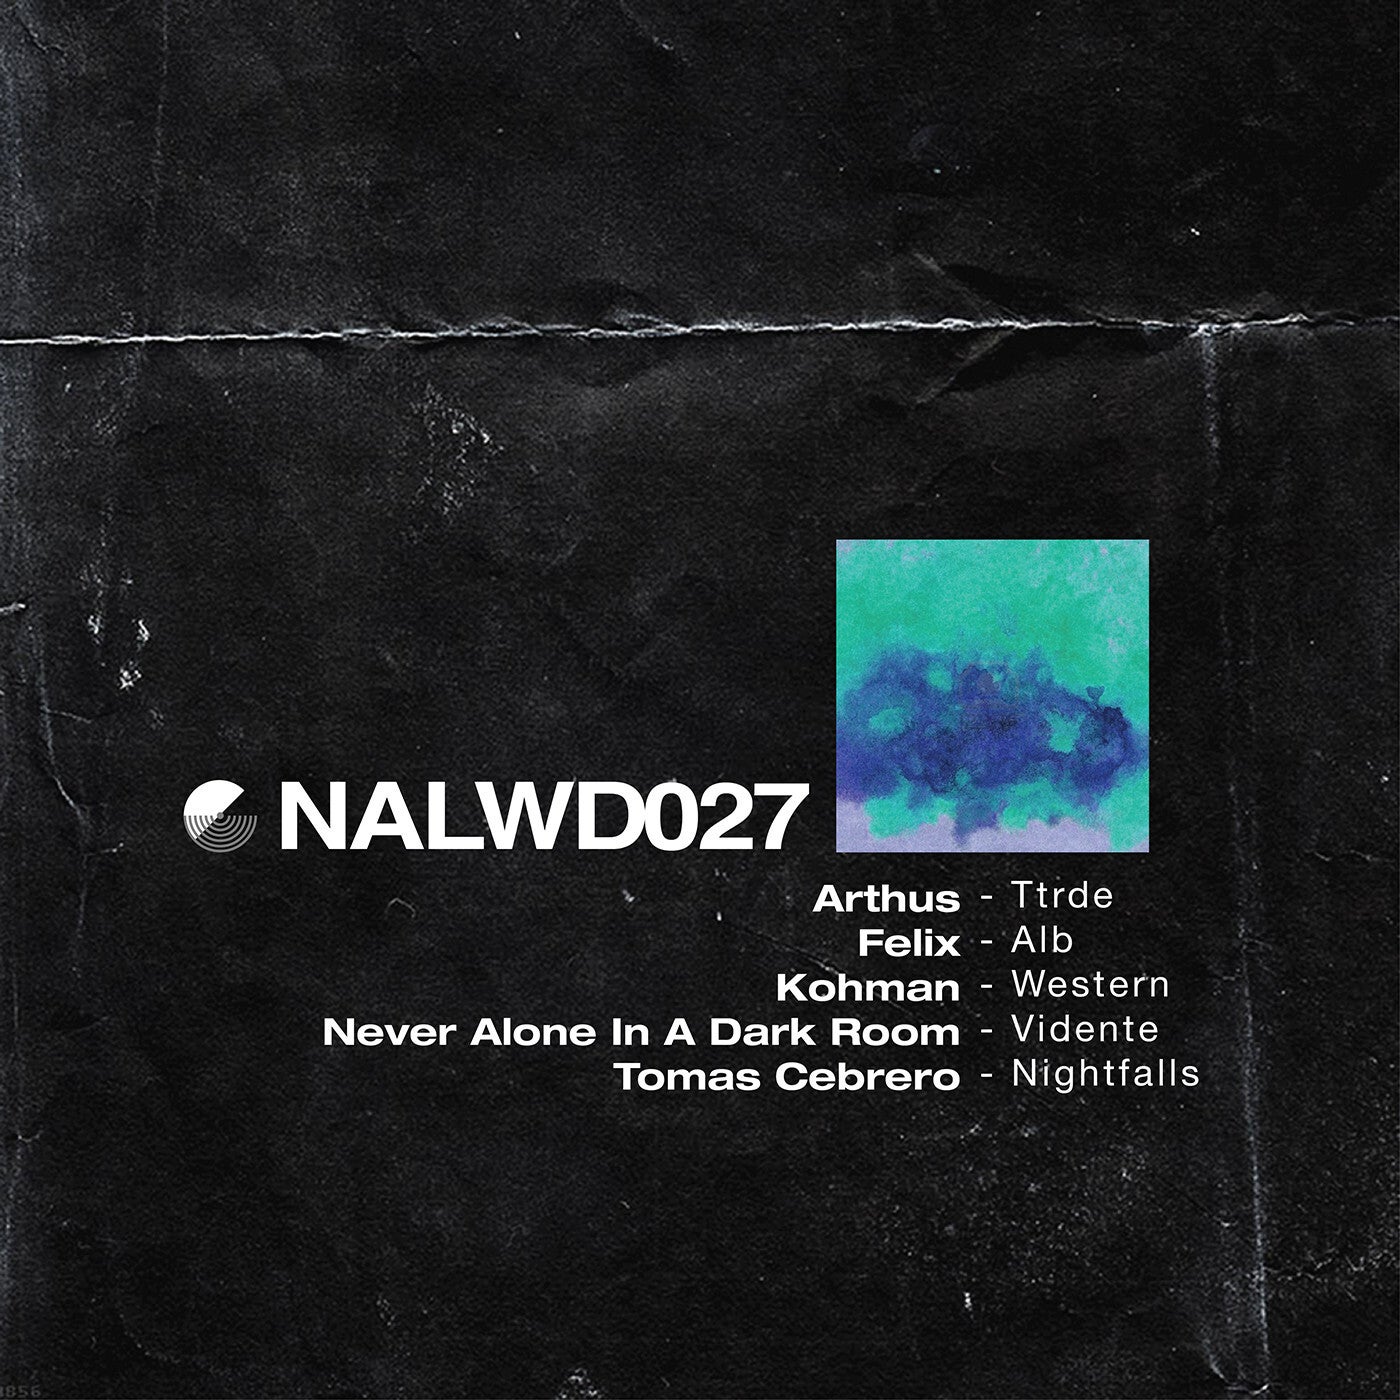 VA - Not Allowed VA 027 [NALWD027]